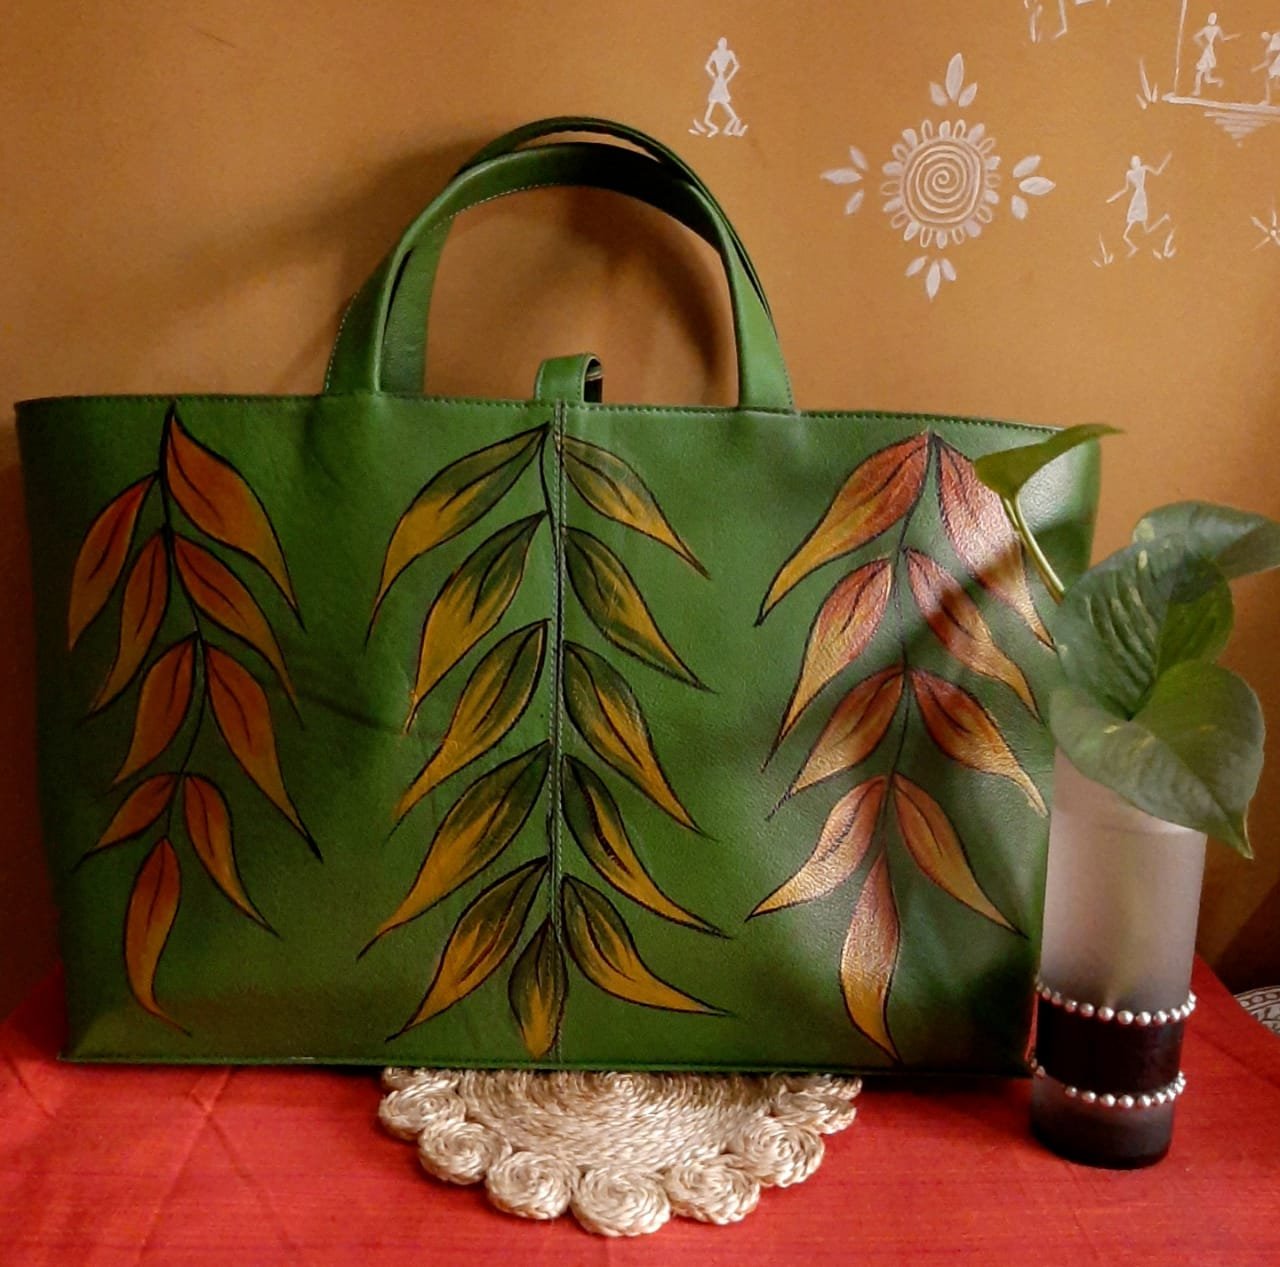 Chinese Vintage Clutch Bag, Vintage Clutch Bag, Green Clutch, Banana Leaves  Clutch, Clutch Purse, Handbag, Shoulder Bag, Handcrafted - Etsy